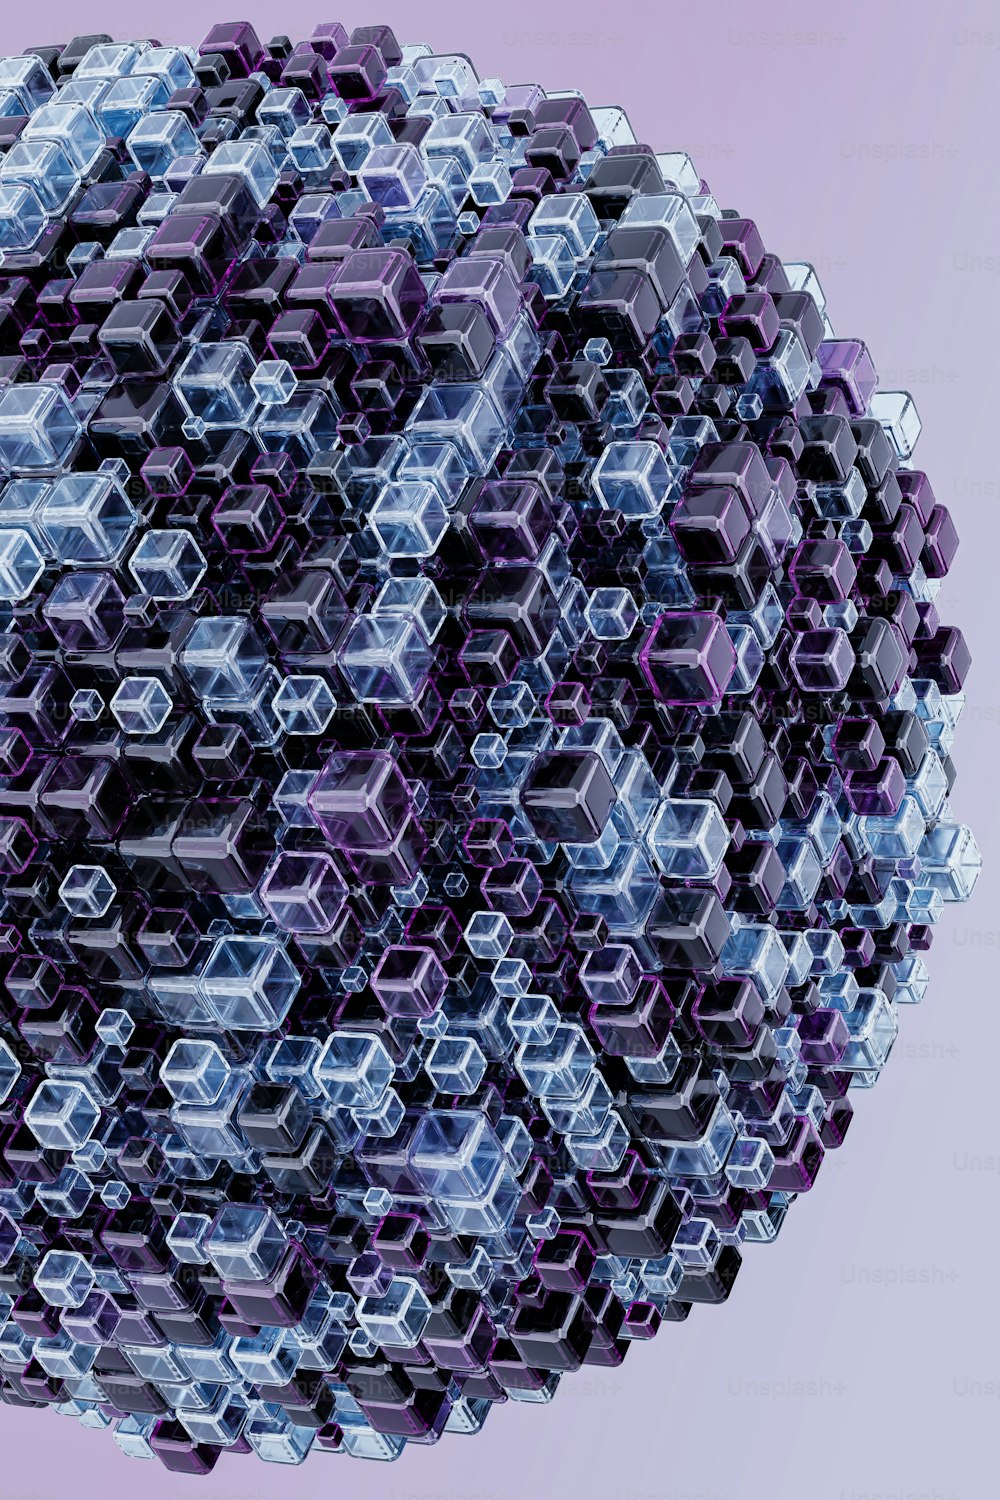 Una sfera fatta di cubi esagonali su uno sfondo viola